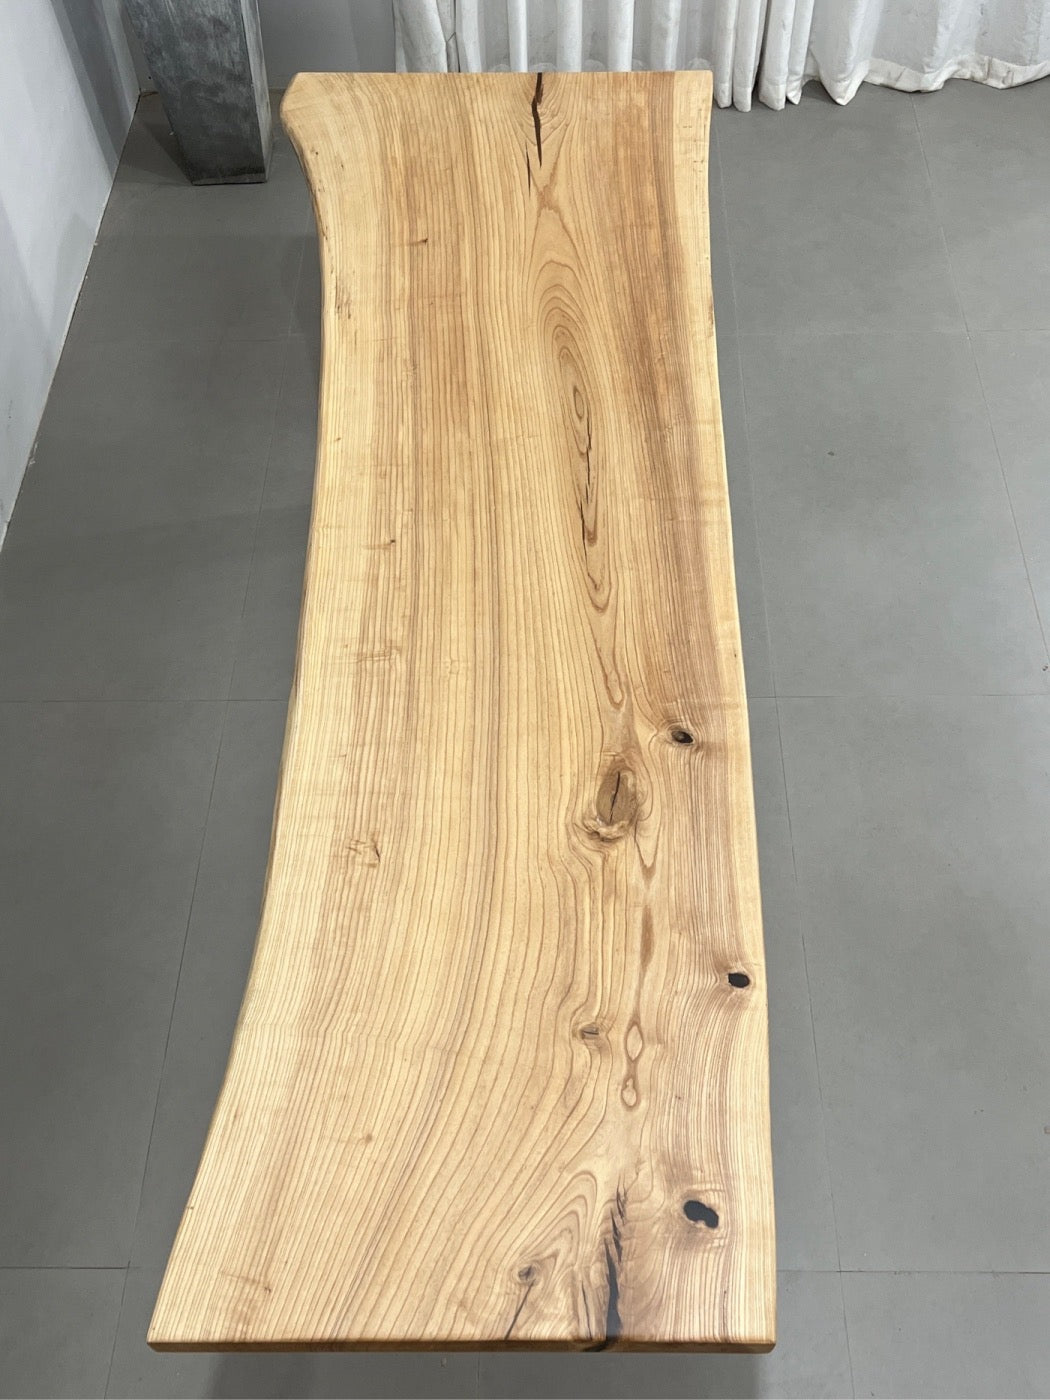 white slab, light color slab, light colour slab, ash wood slab, ash wood table